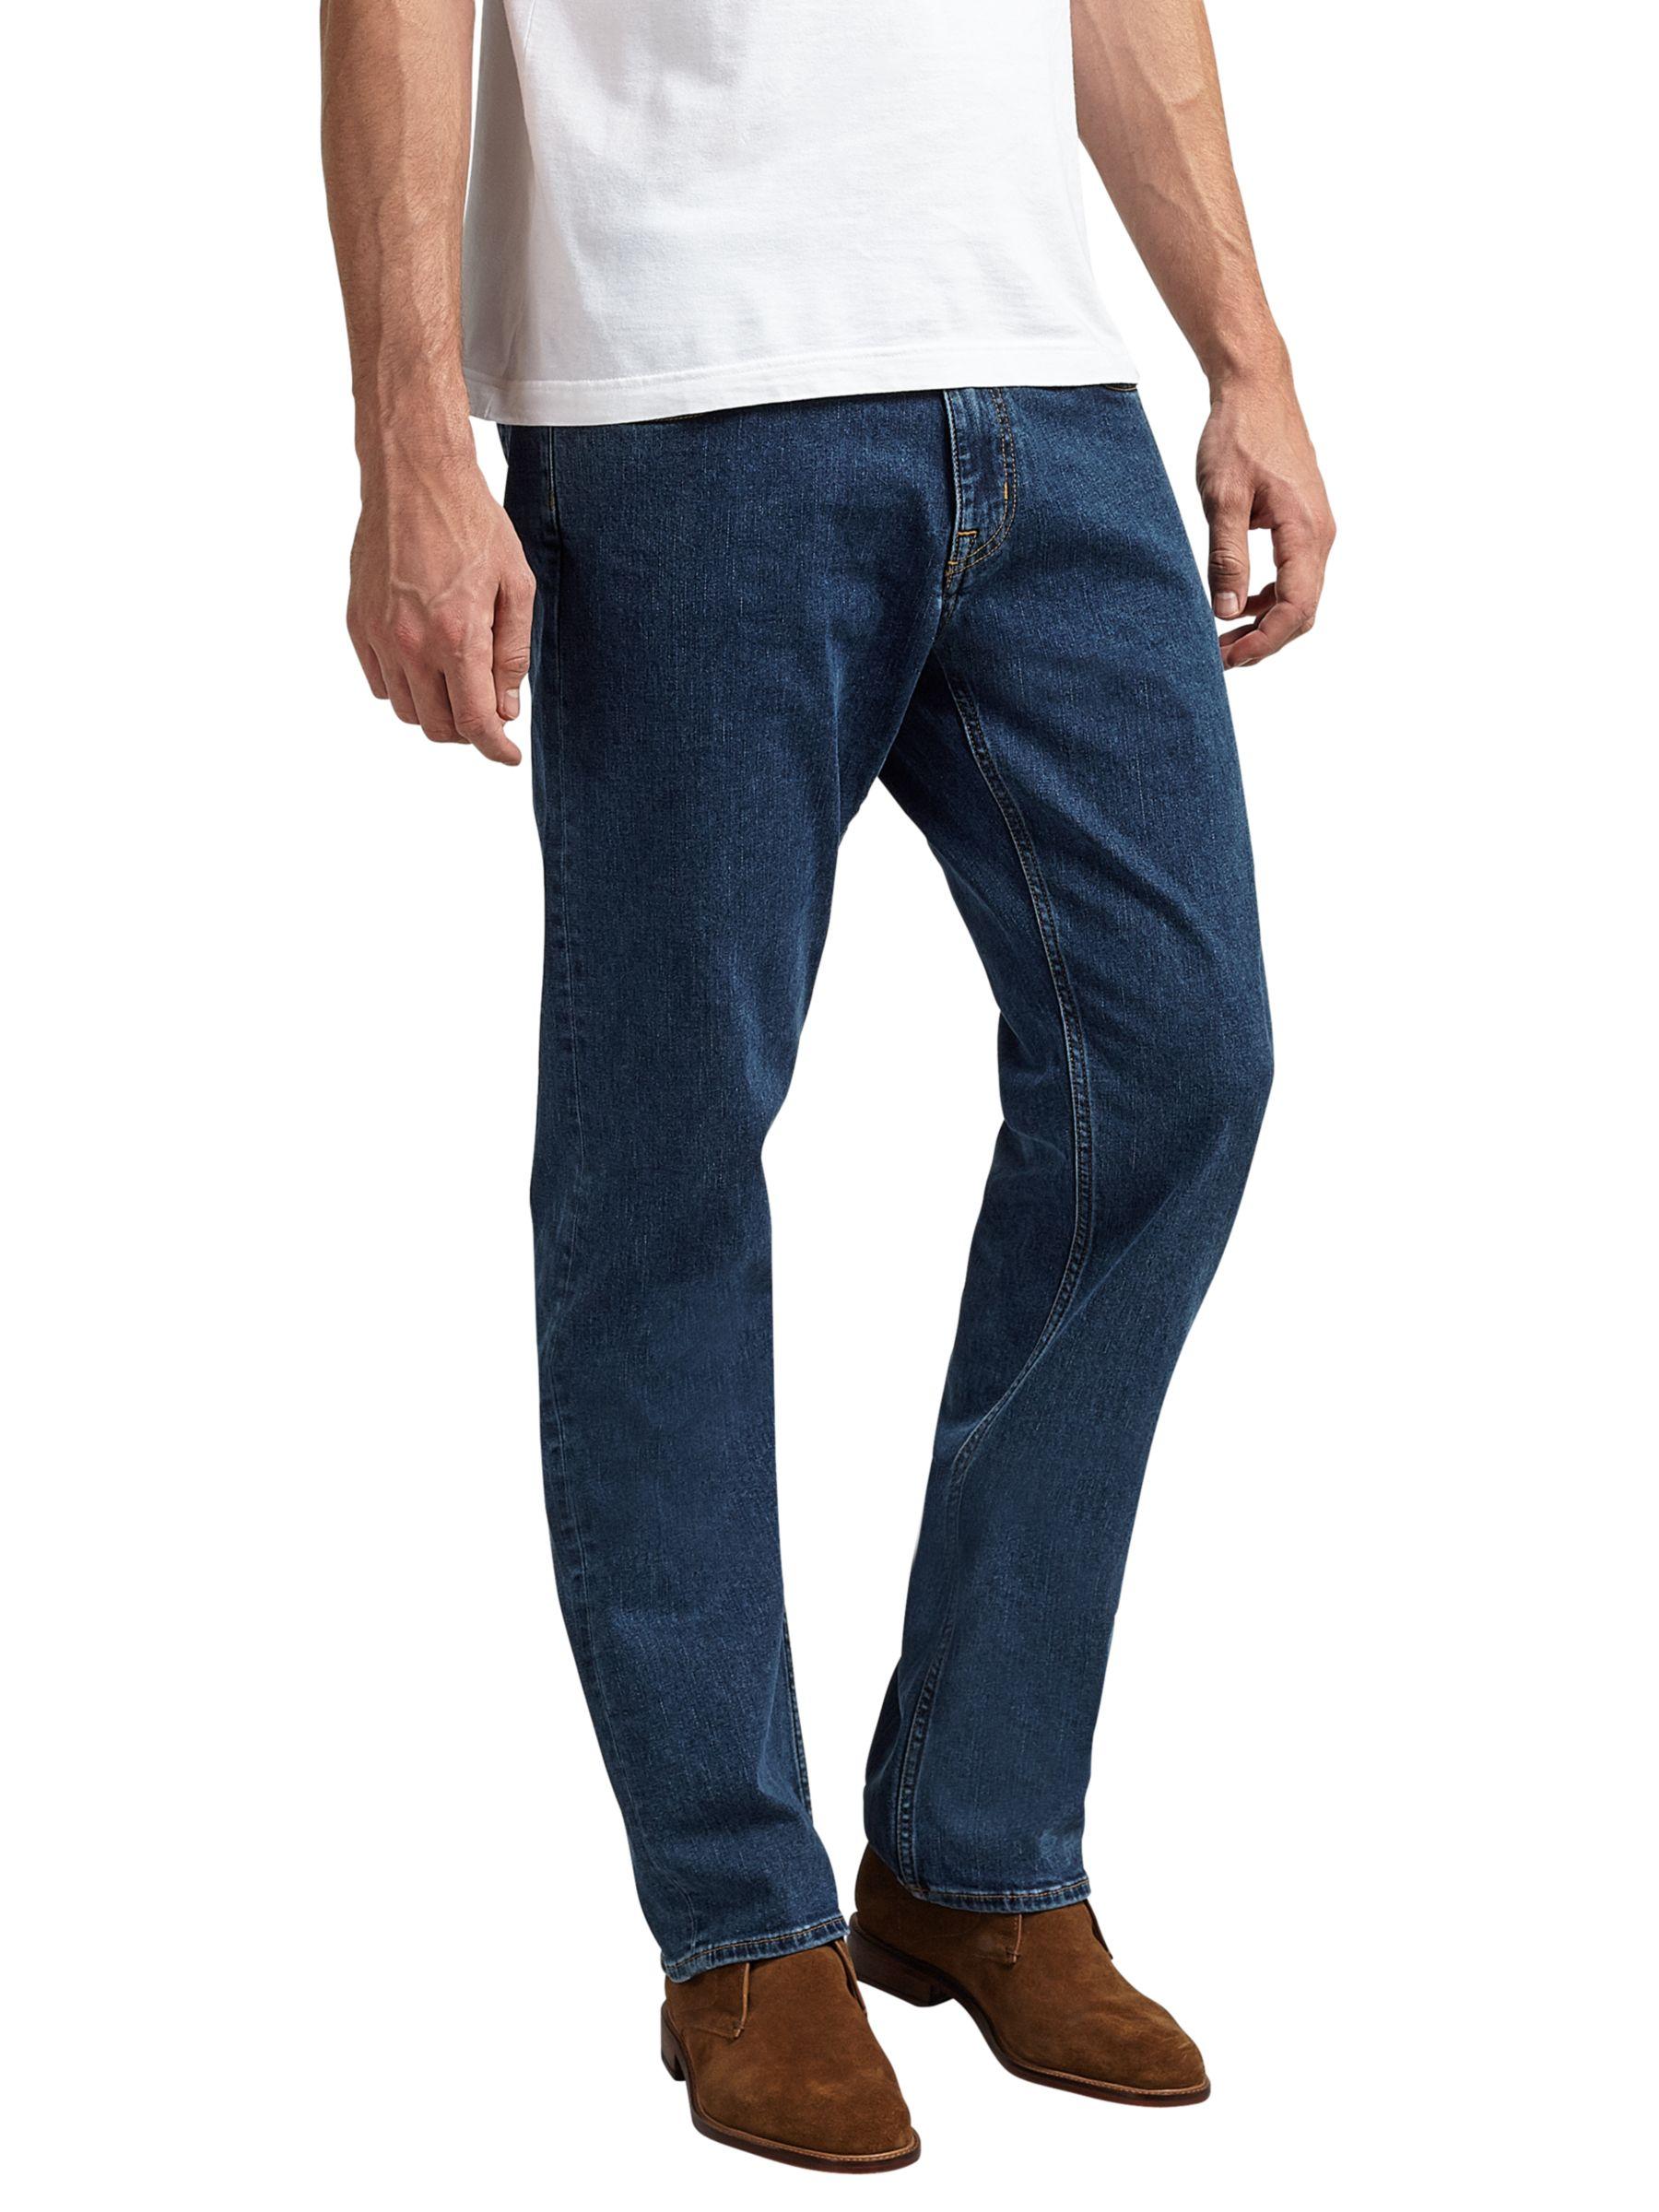 GANT Mens 11 Oz Stretch Cotton Jeans 